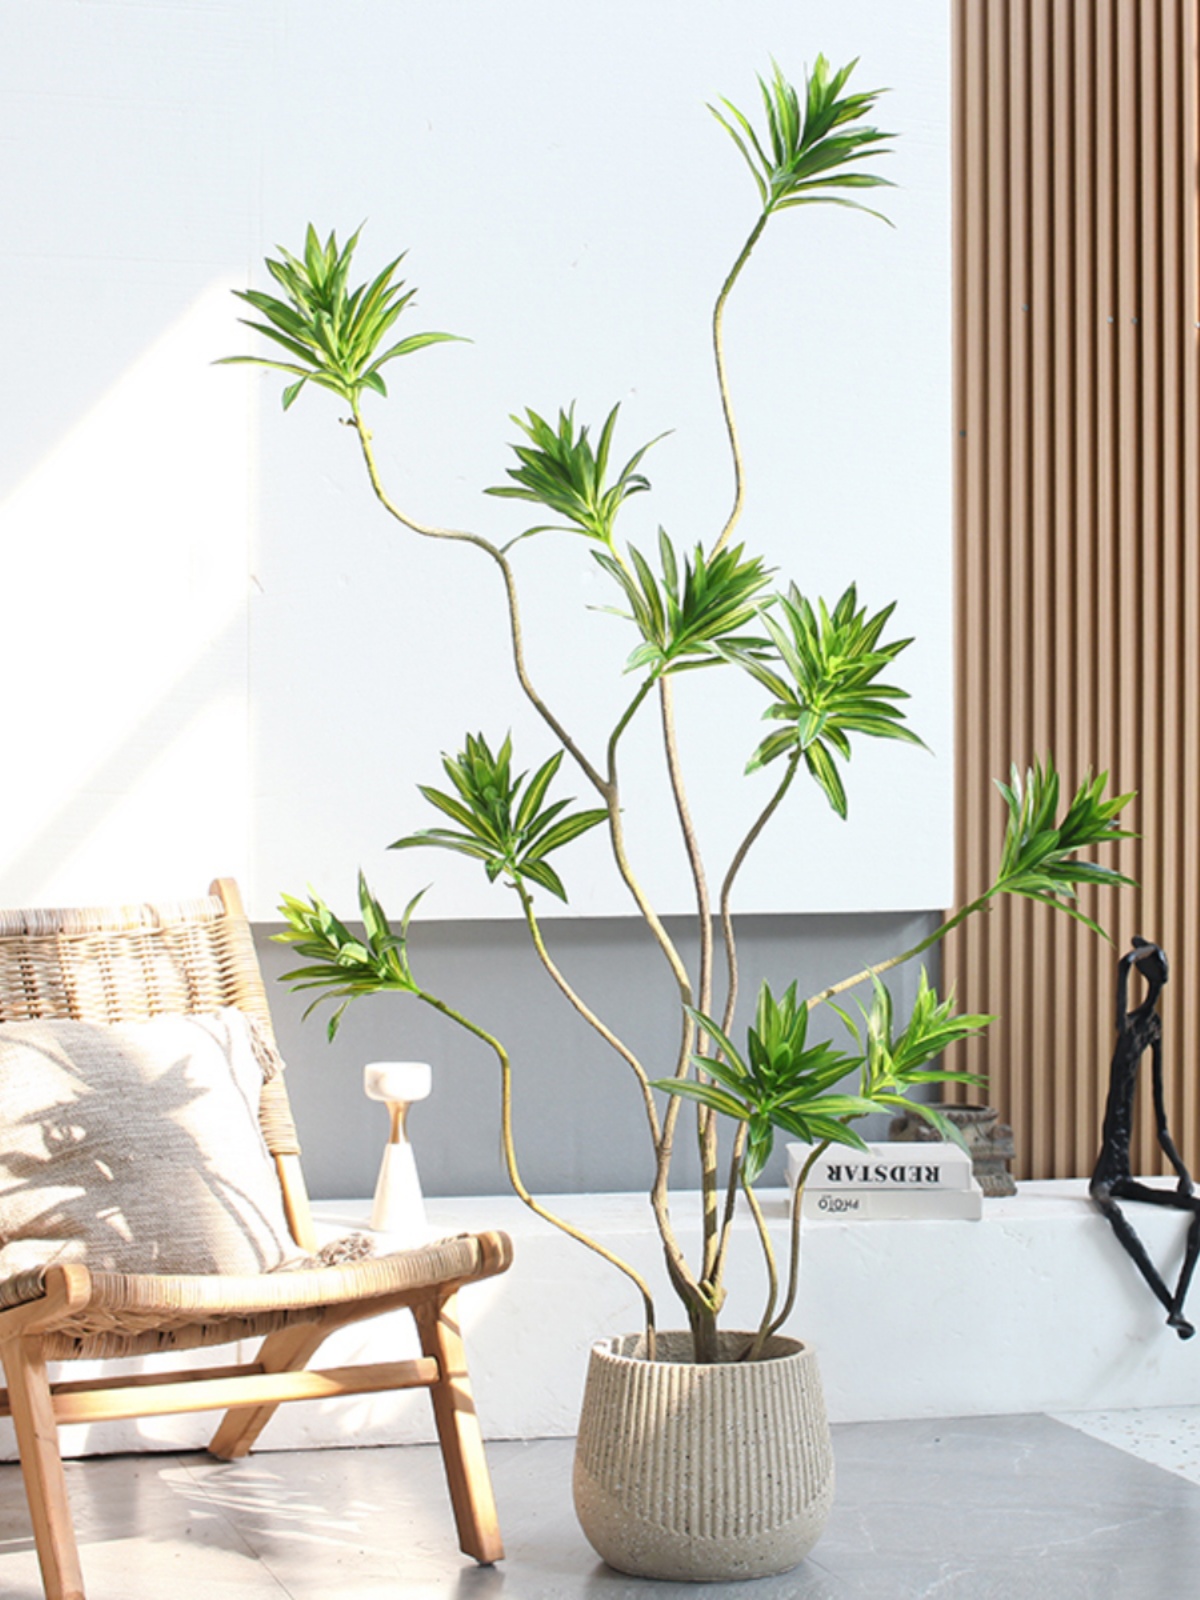 仿真富貴百合竹盆景綠植擺件 裝飾客廳電視櫃 落地綠植盆栽